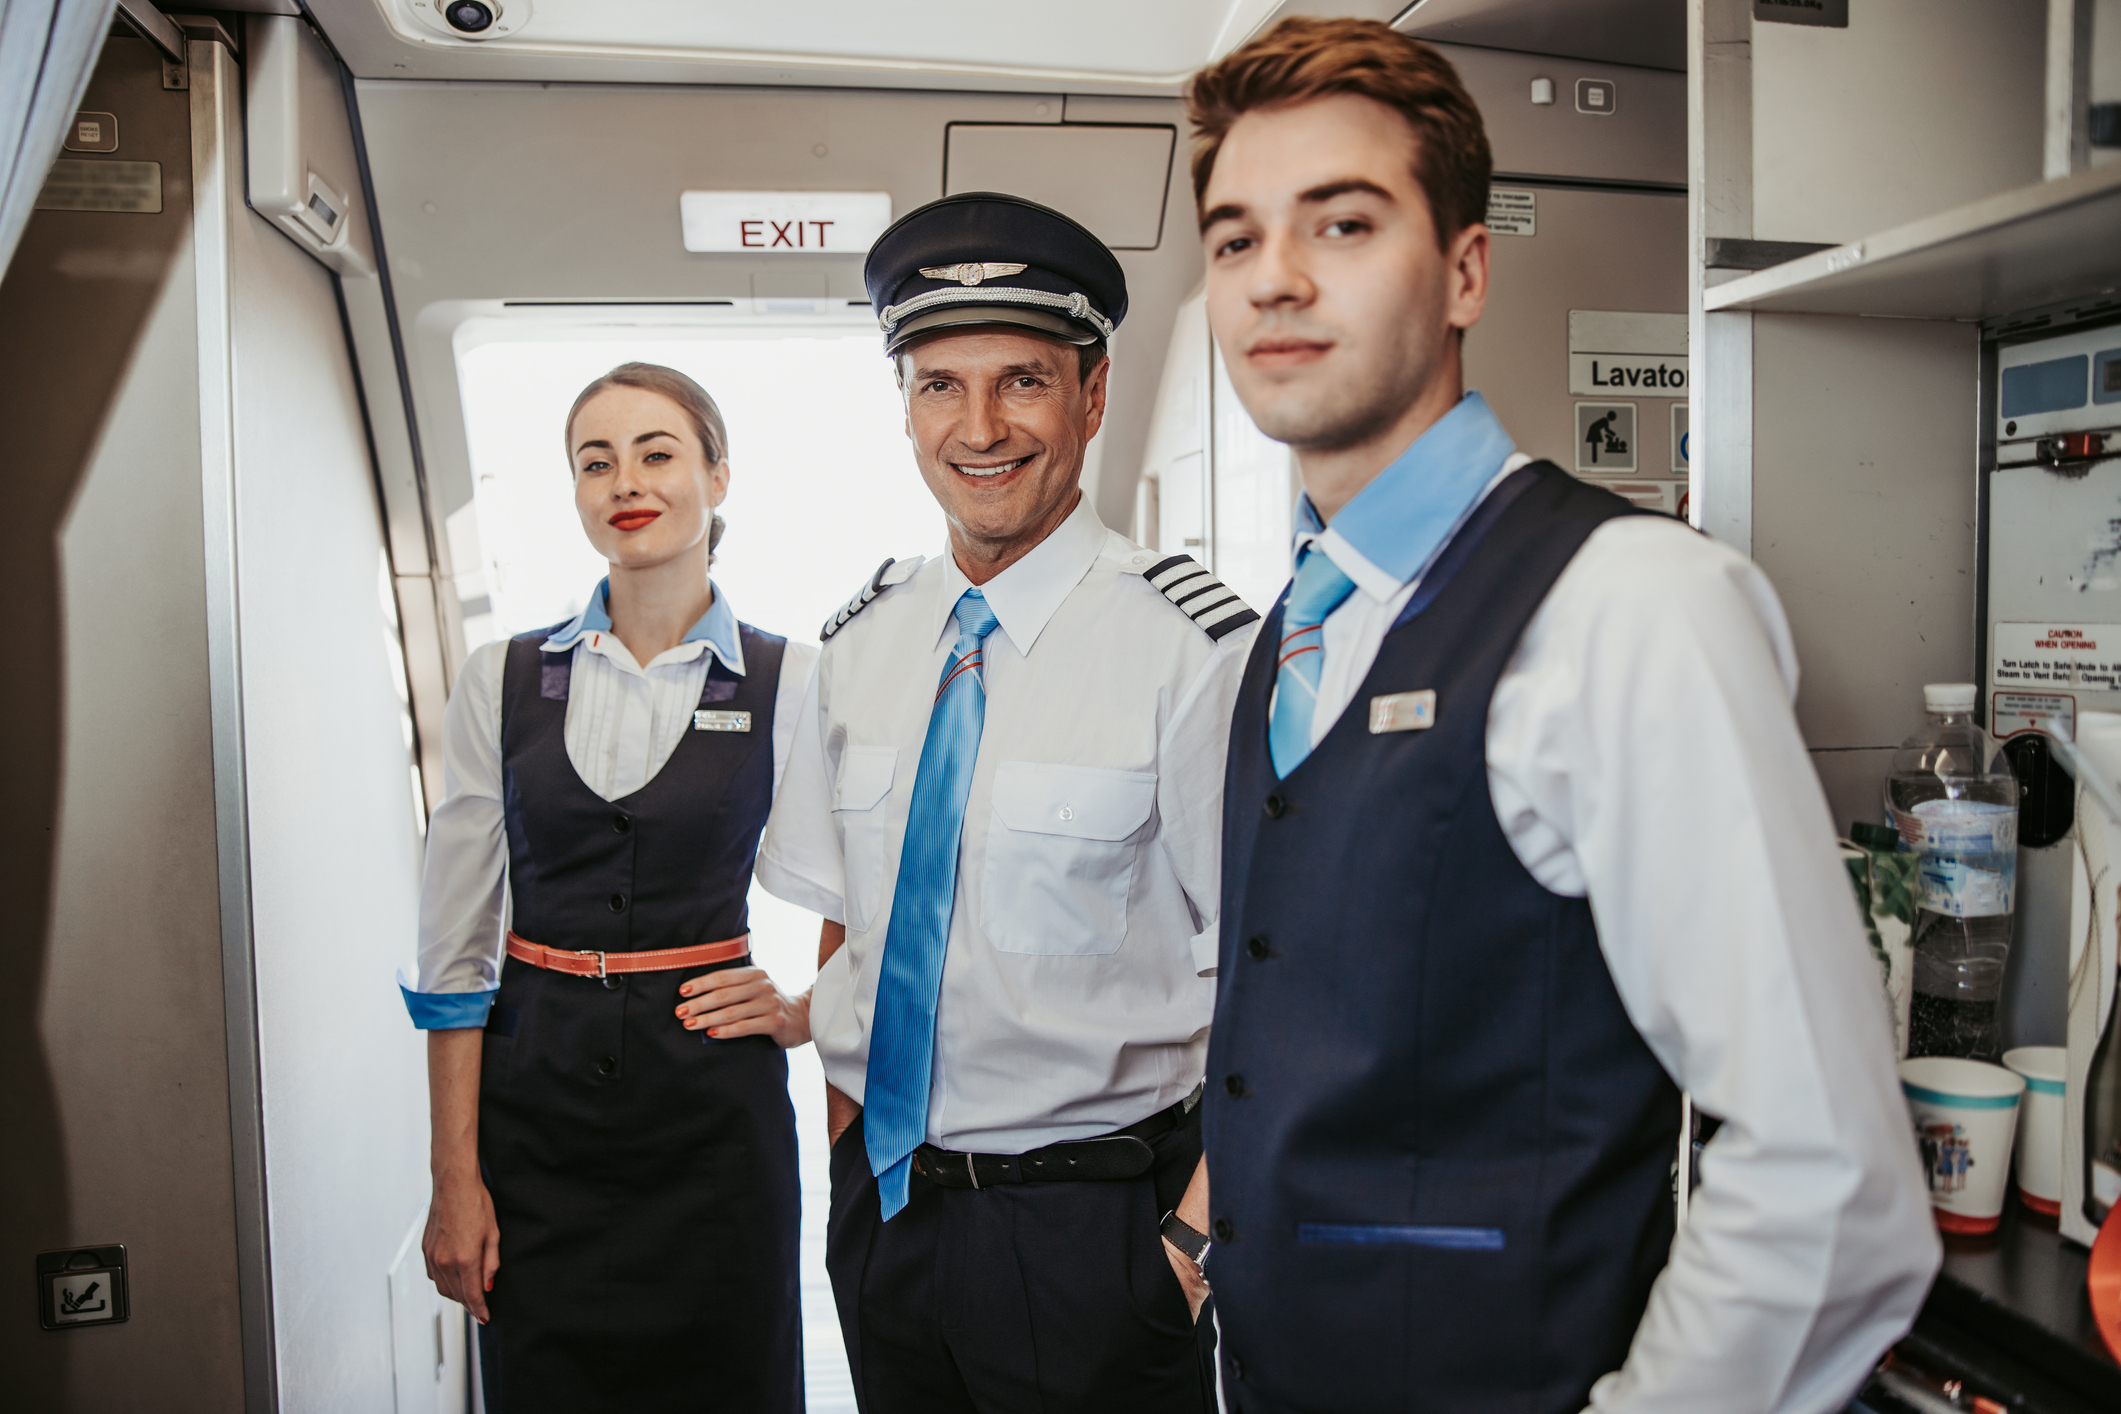 En pilot og to servicemedarbejdere står foran udgangen af et fly og smiler ind i kameraet.